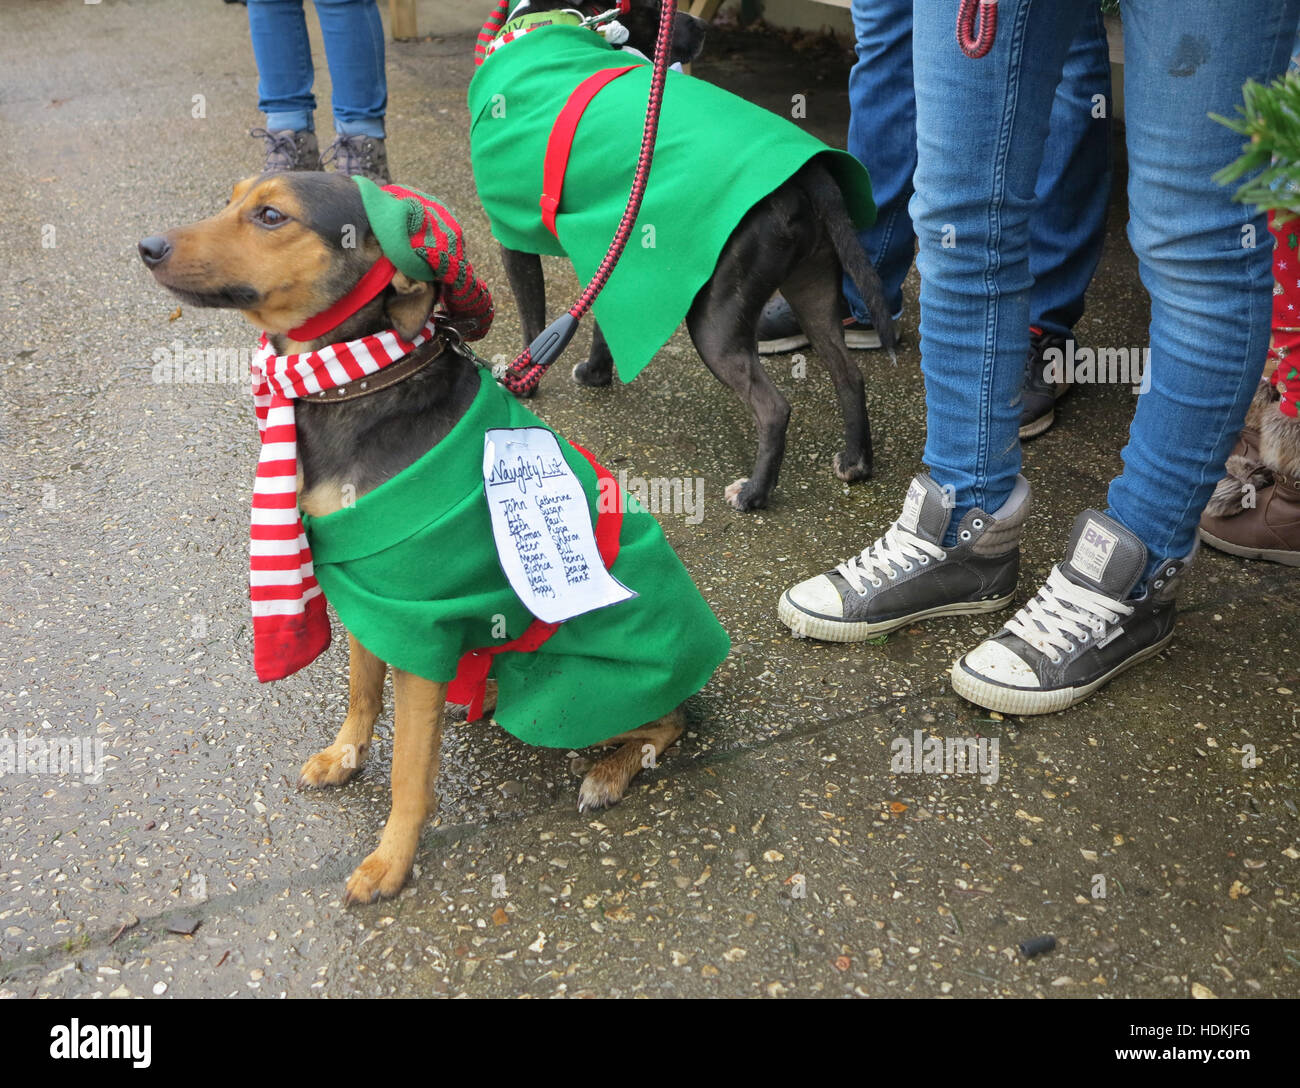 Kleiner Hund im Weihnachts-Fancy-Dress-Wettbewerb. Die Note, die an seinem Outfit befestigt ist, sagt Naughty List, gefolgt von einer Liste von Namen Stockfoto